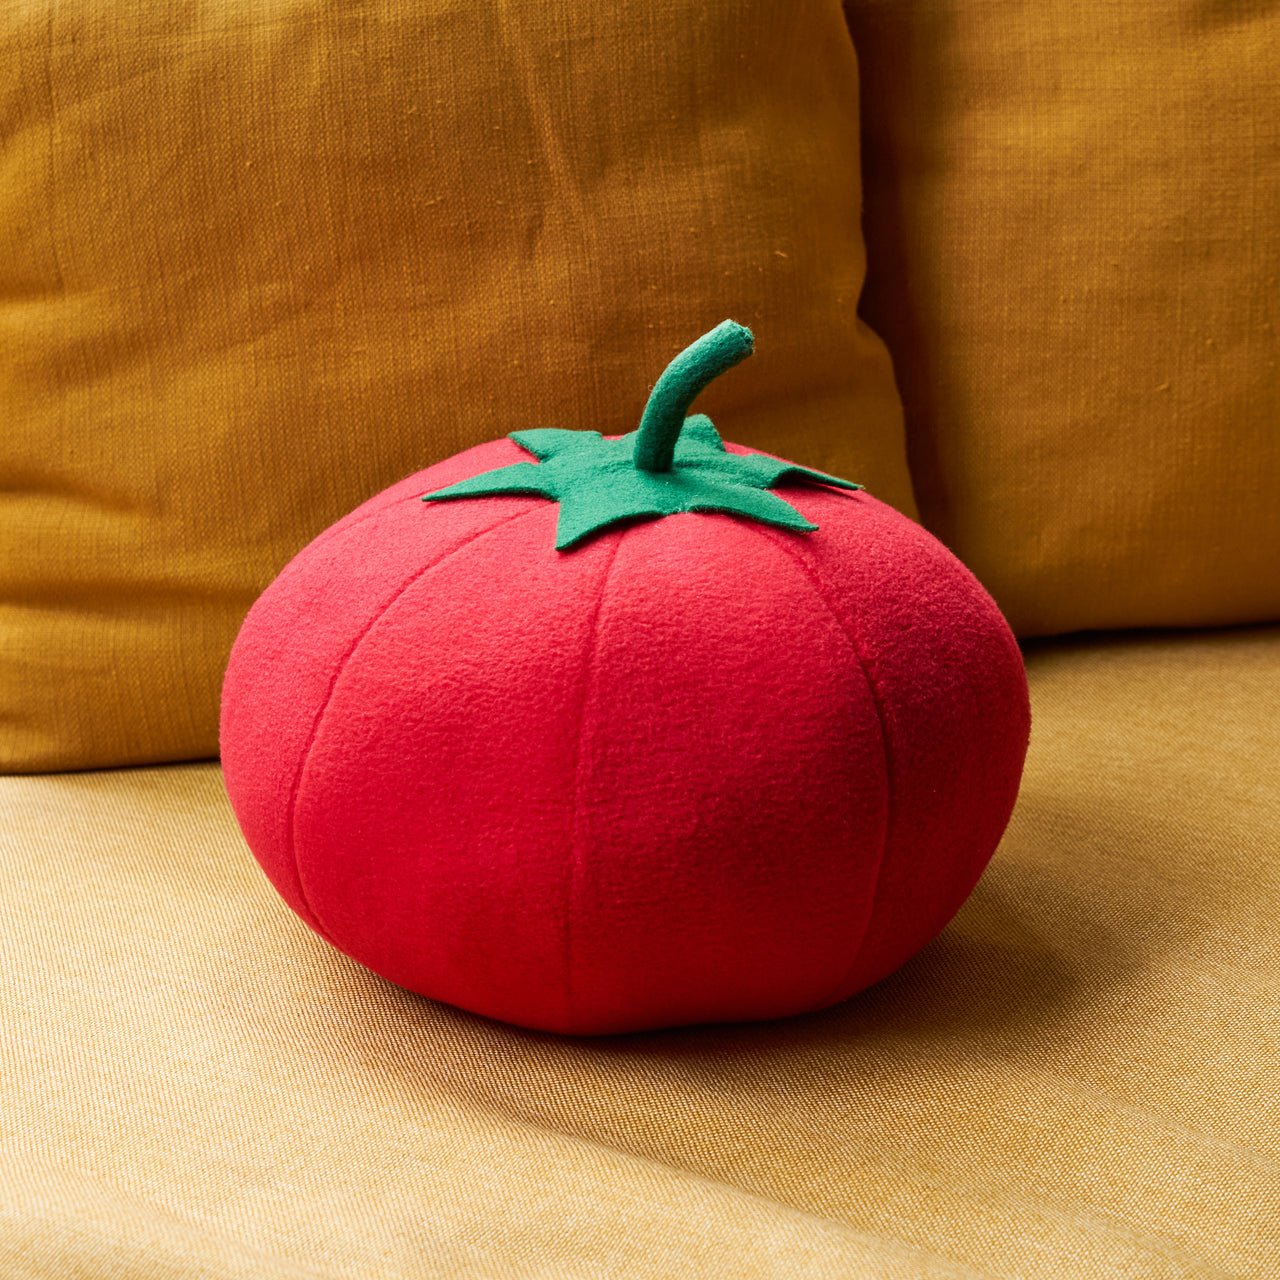 The Tomato Pillow